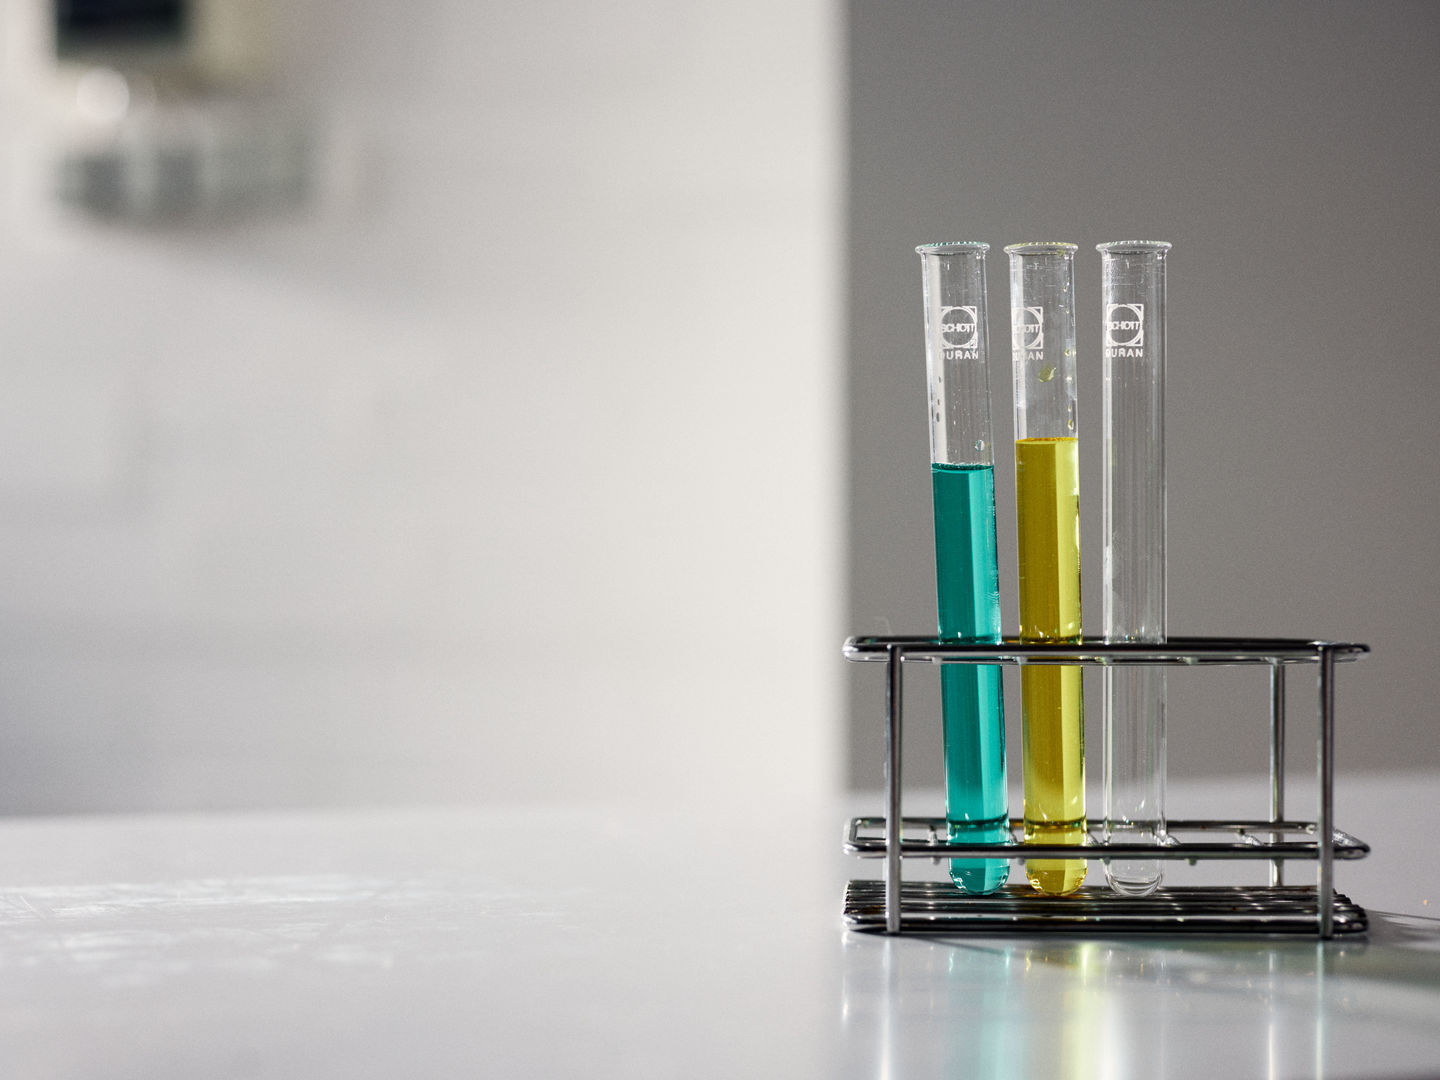 Drei Reagenzgläser in einem Reagenzglasständer. Von links: Türkise Flüssigkeit, gelbe Flüssigkeit, leer.